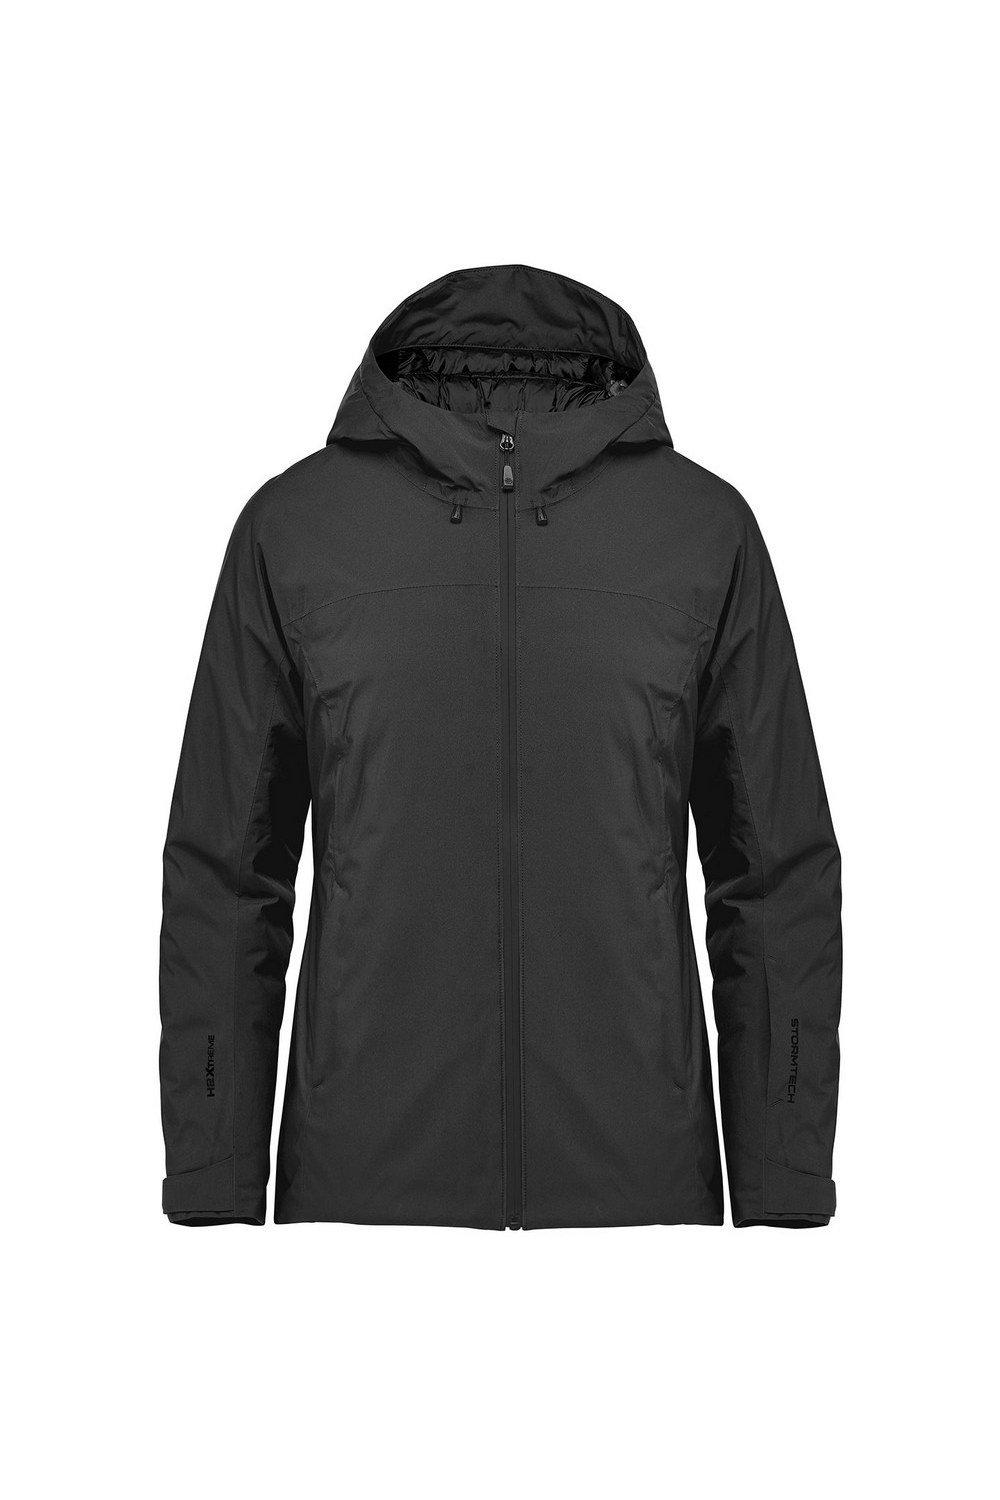 Куртка Nostromo Soft Shell Stormtech, черный куртка nostromo thermal soft shell stormtech серый